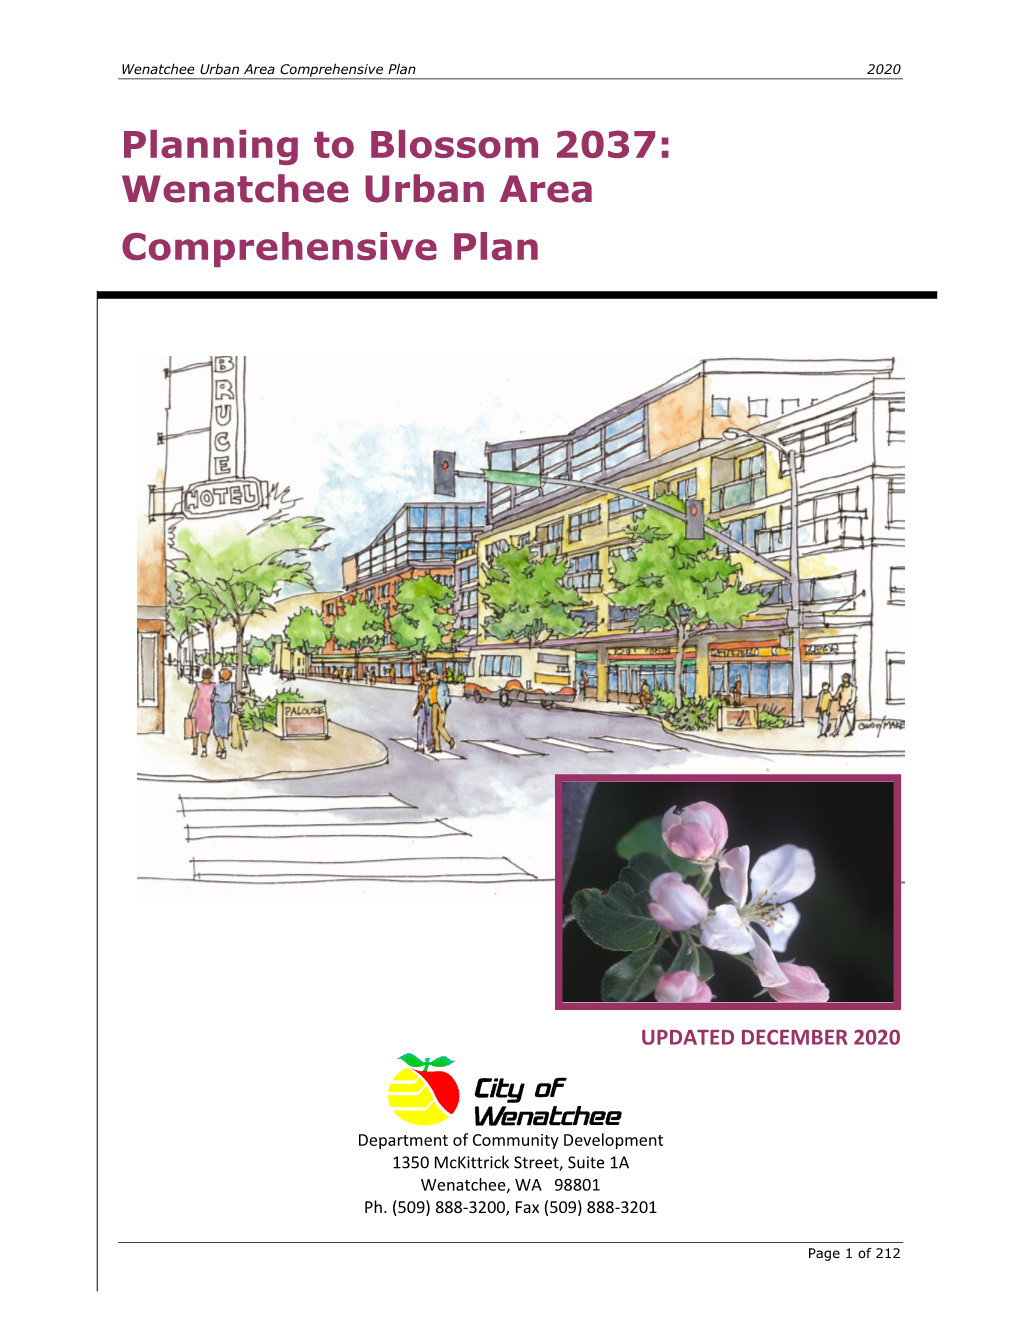 Planning to Blossom 2037: Wenatchee Urban Area Comprehensive Plan